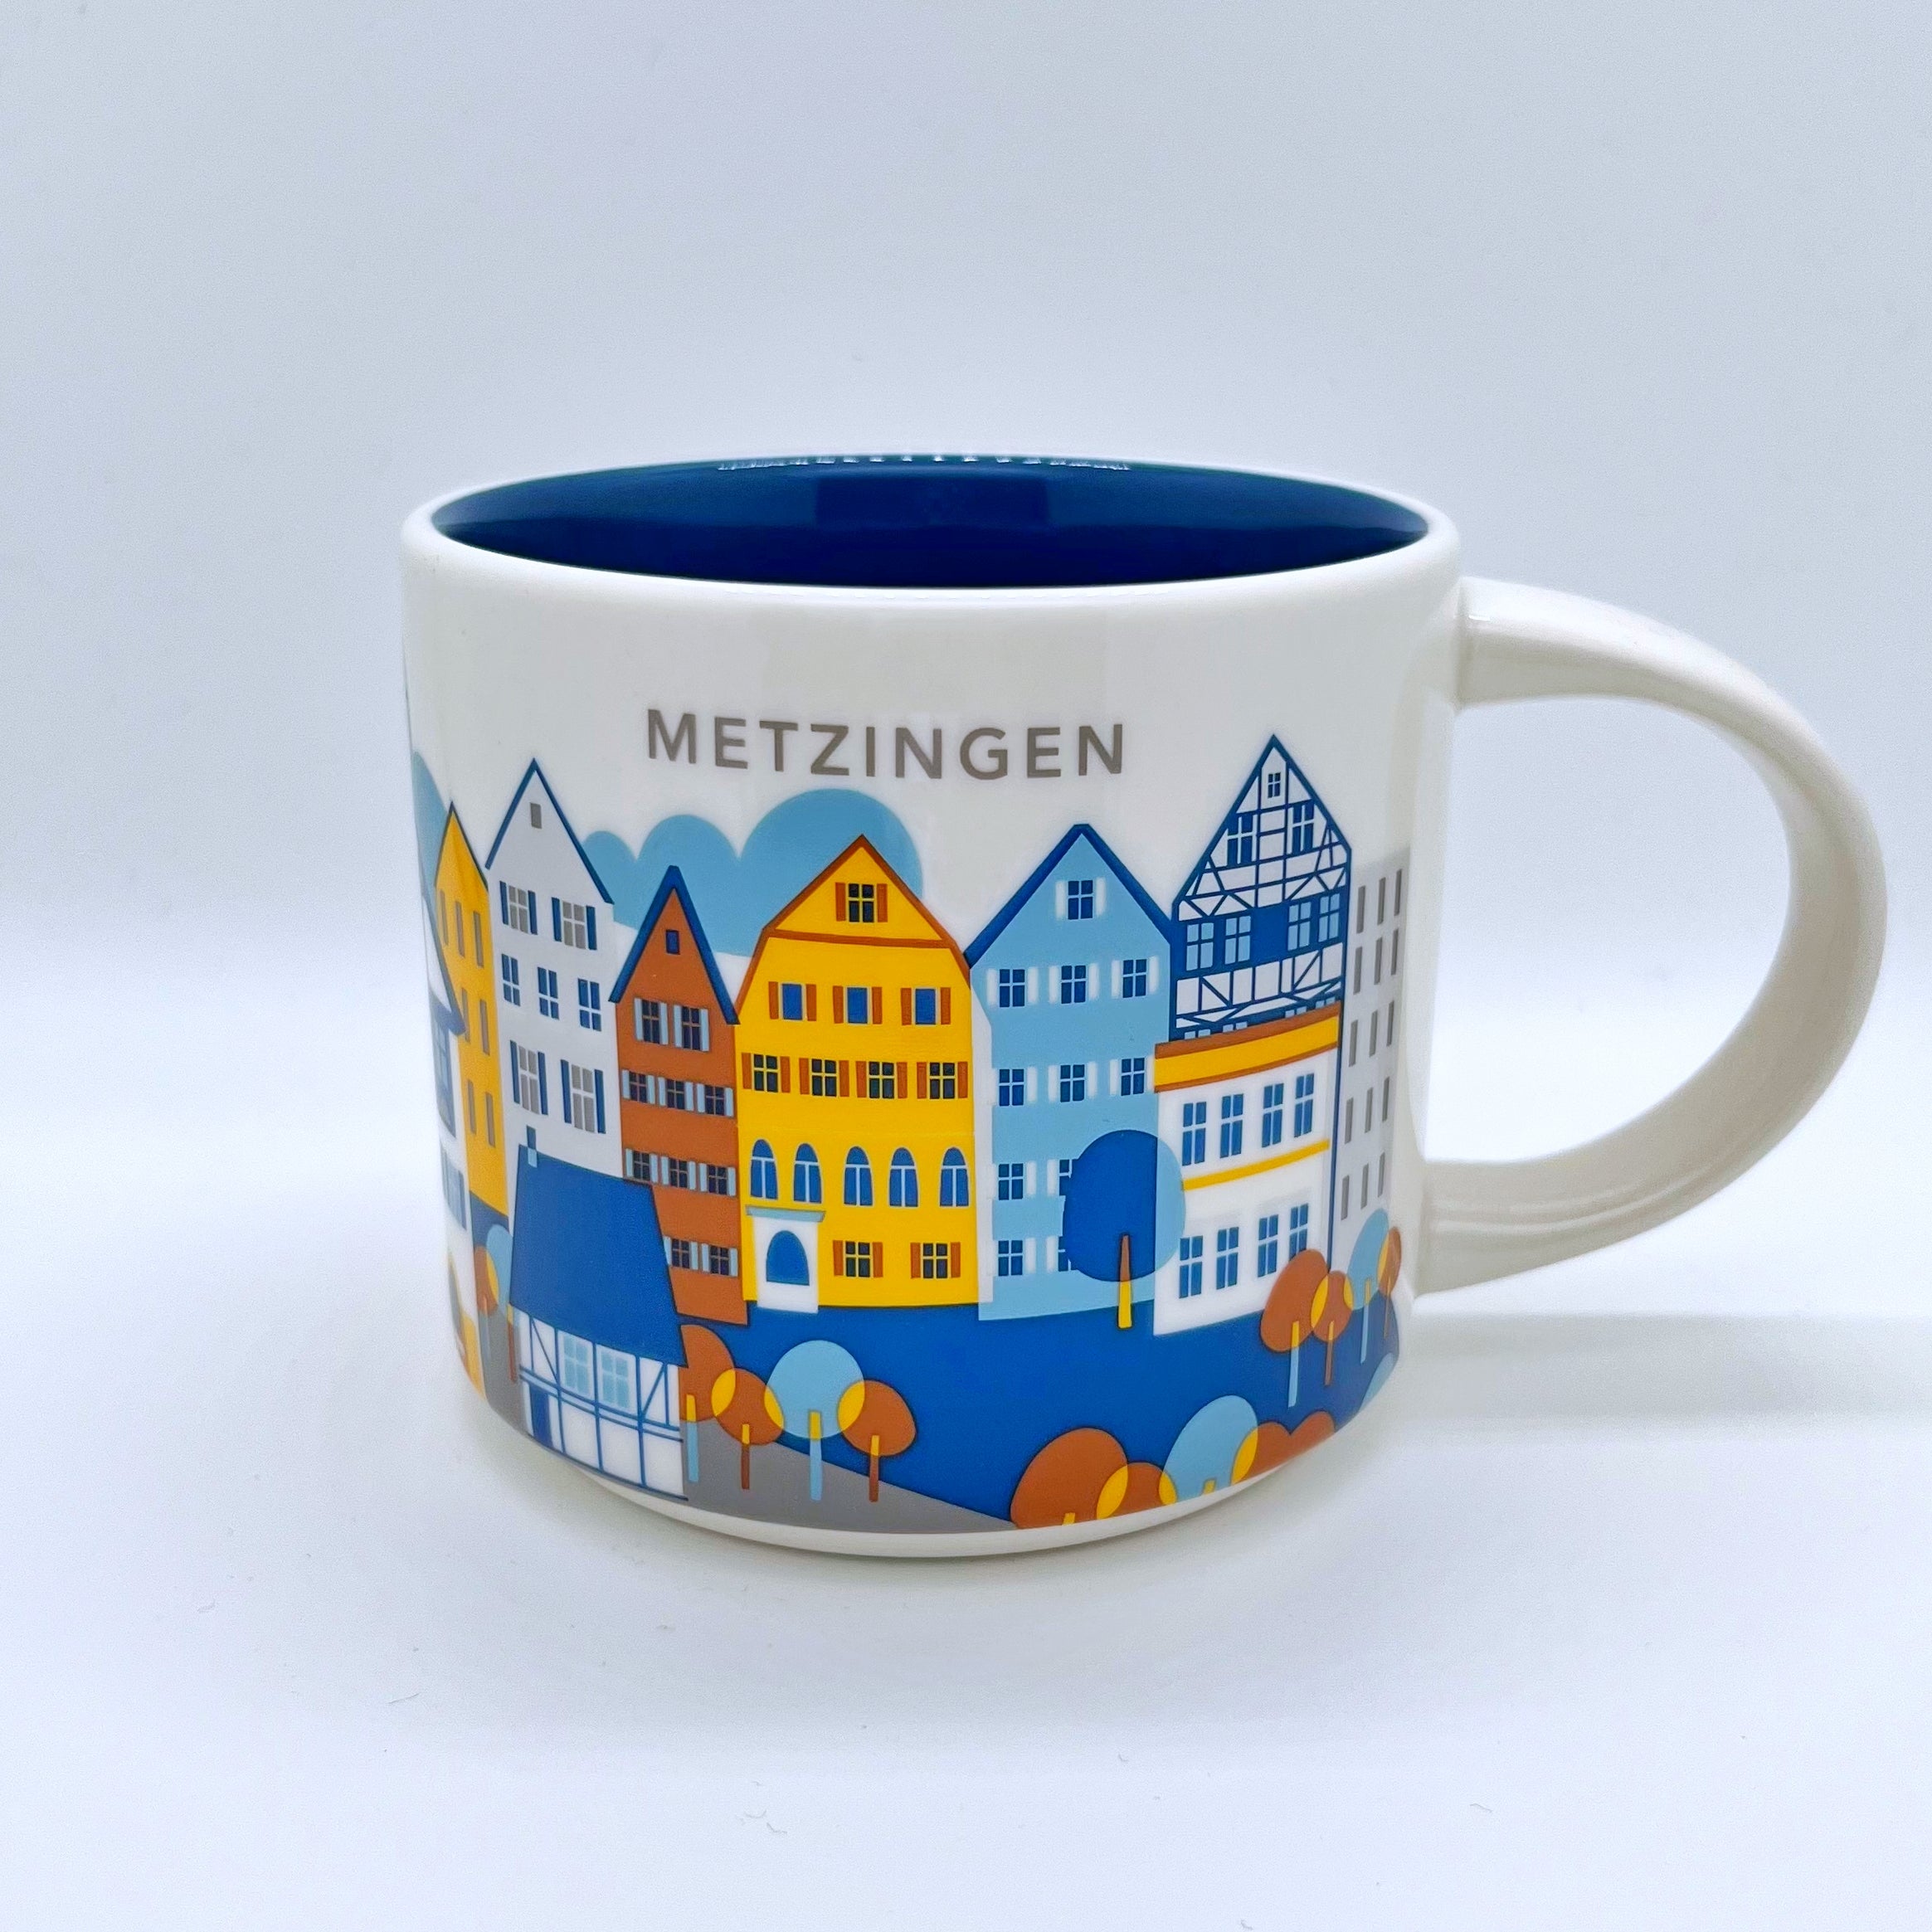 Kaffee Tee und Cappuccino Tasse von Starbucks mit gemalten Bildern aus der Stadt Metzingen